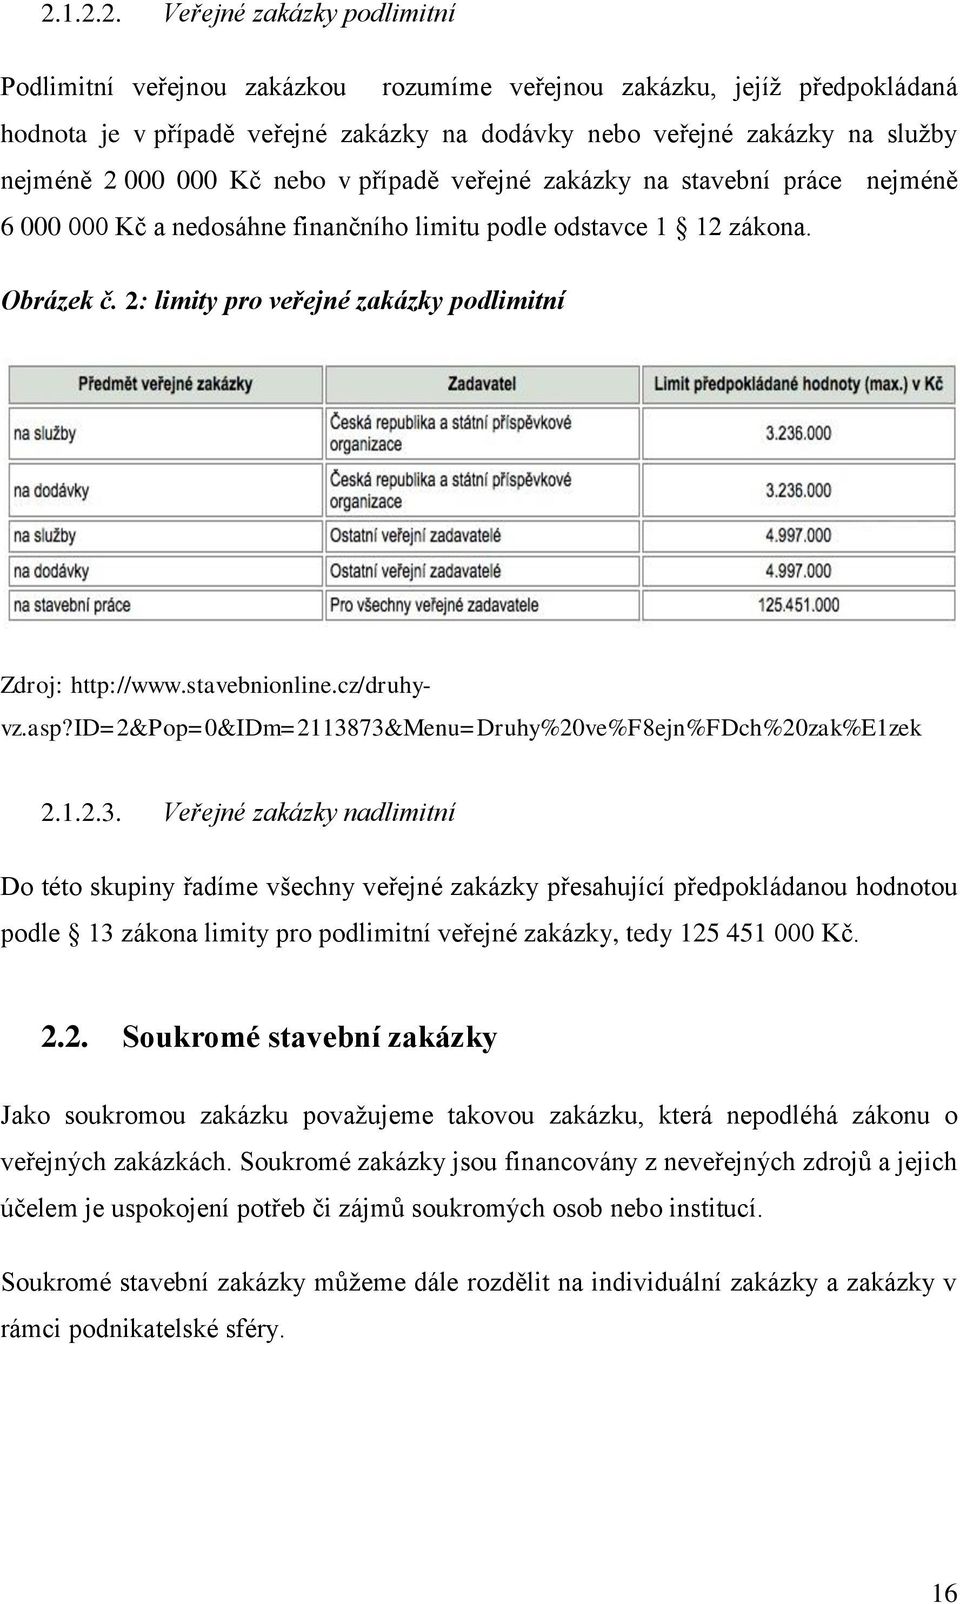 2: limity pro veřejné zakázky podlimitní Zdroj: http://www.stavebnionline.cz/druhyvz.asp?id=2&pop=0&idm=21138